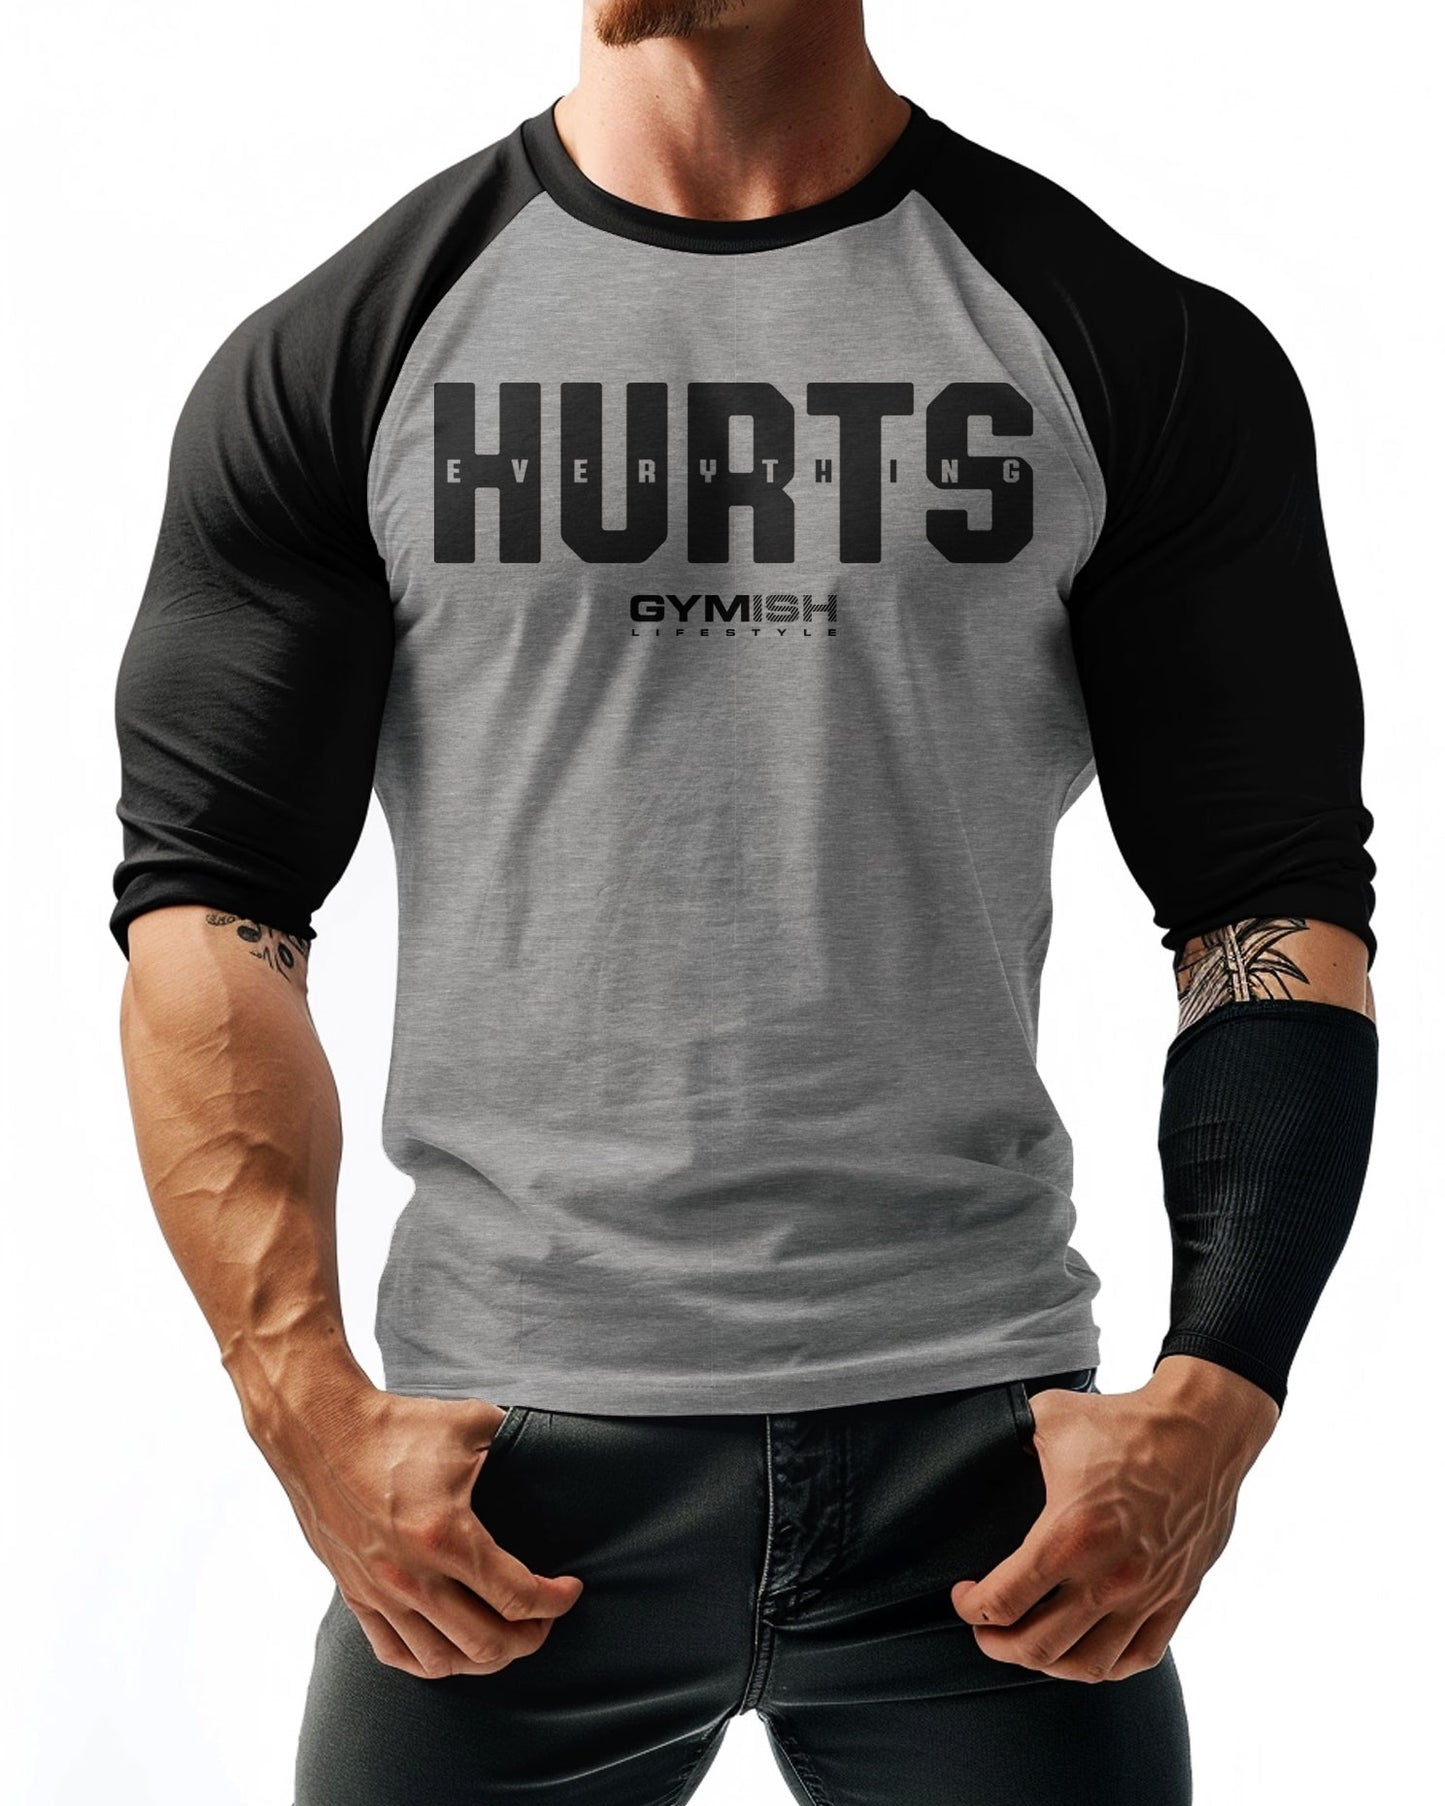 05- RAGLAN Everything Hurts Workout Gym T-Shirt for Men